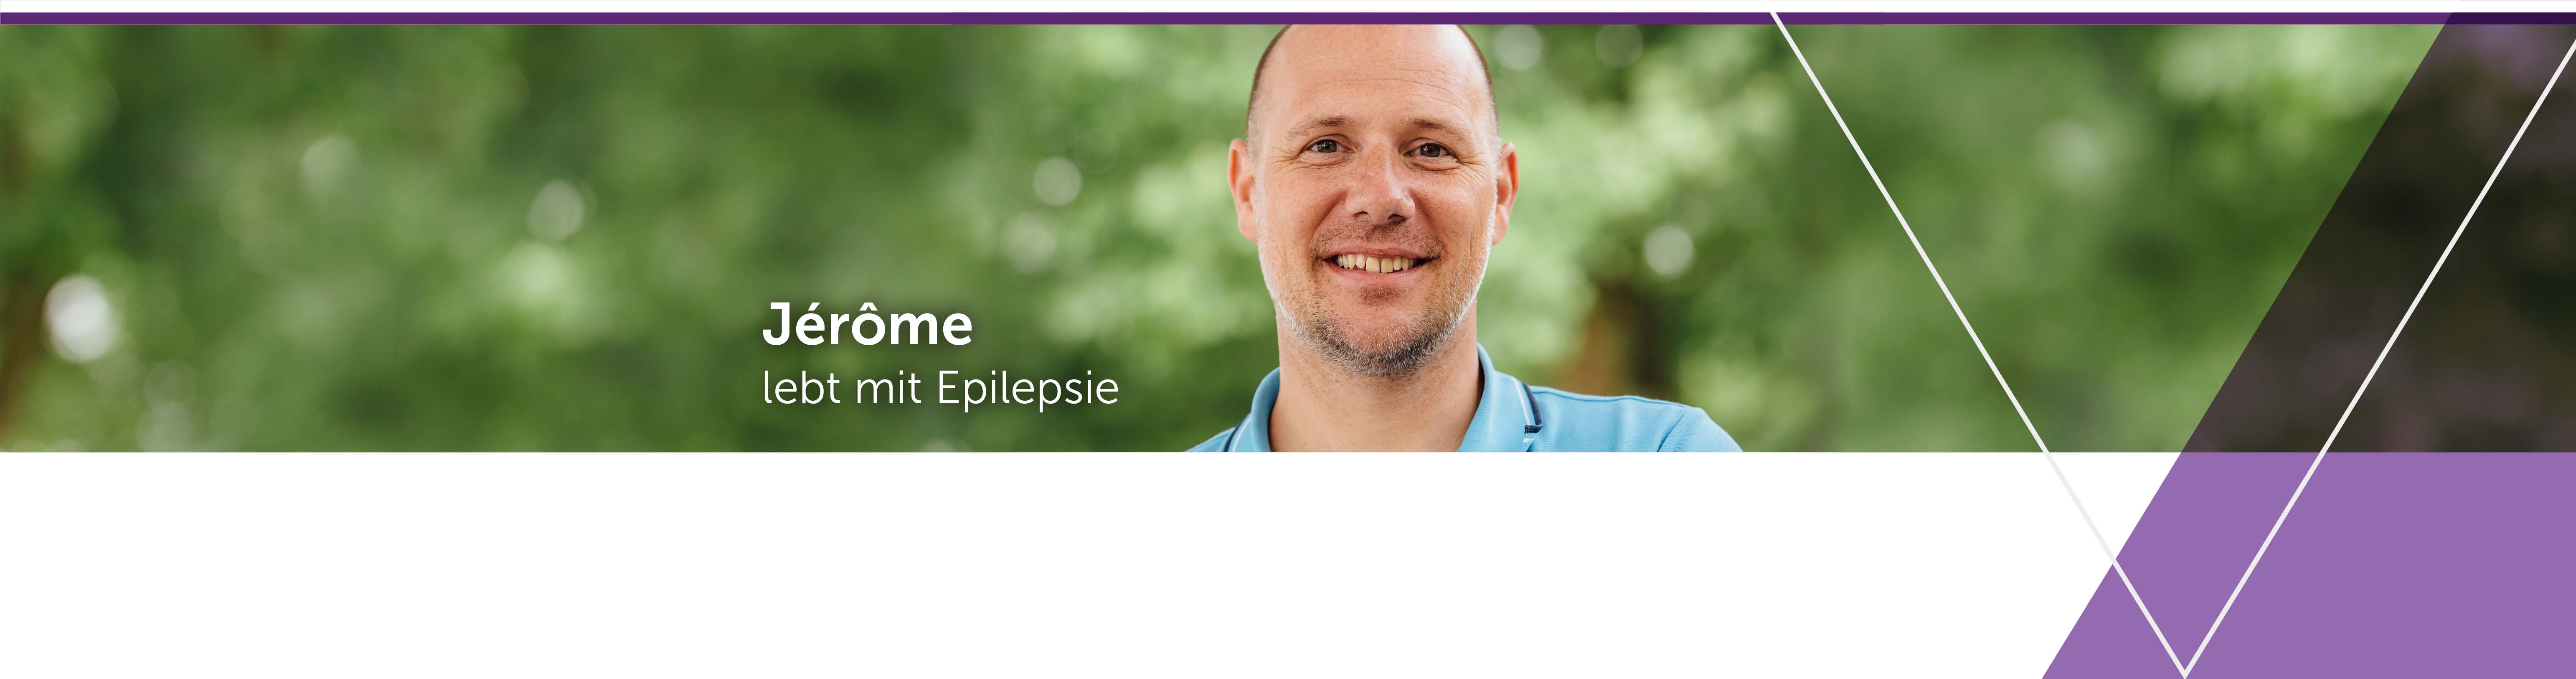 UCB bietet Unterstützung für Menschen mit Epilepsie.